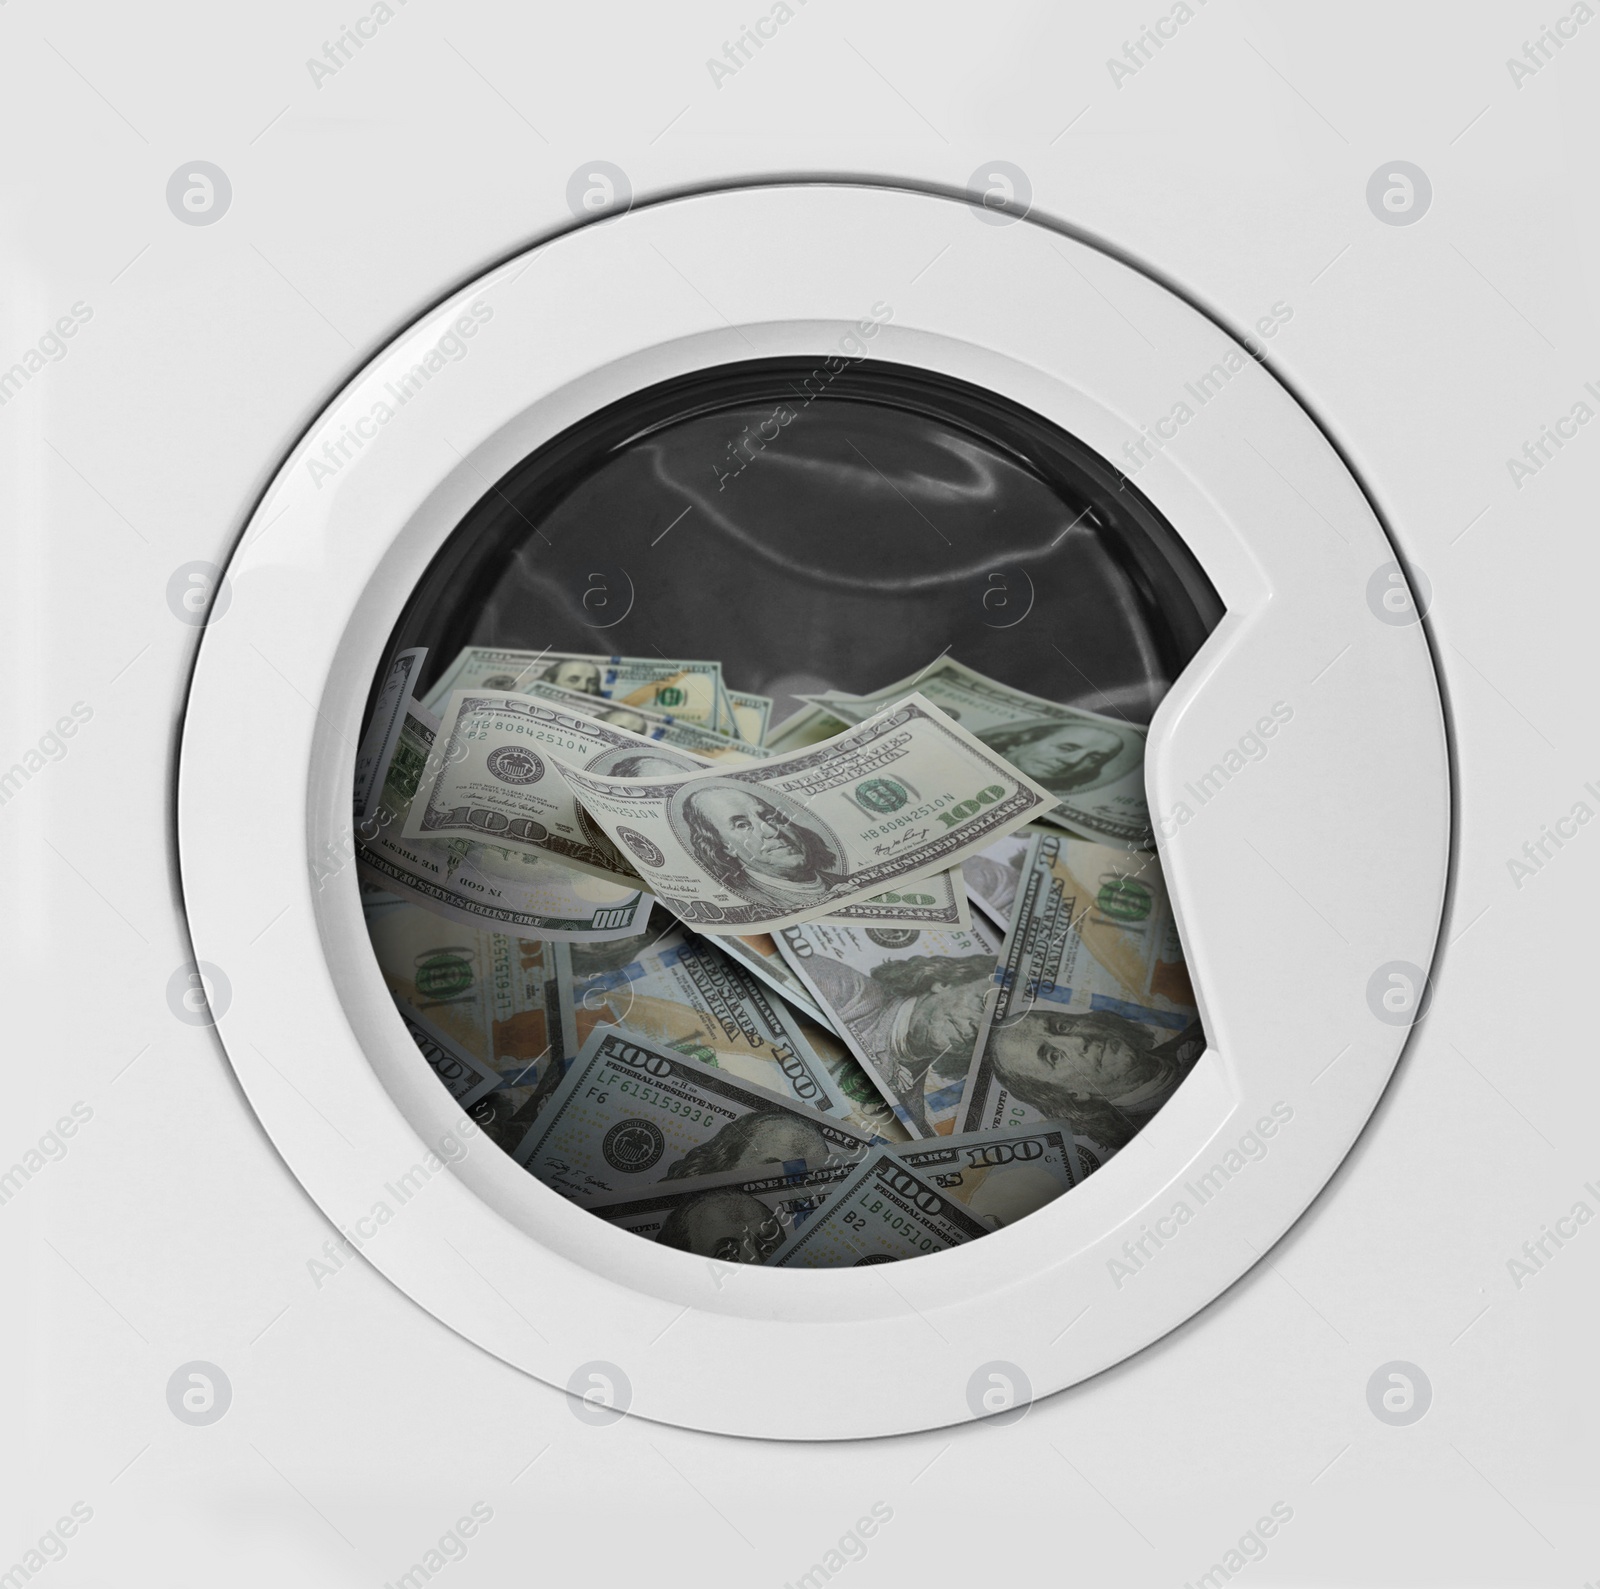 Image of Money laundering. Many dollar banknotes in washing machine